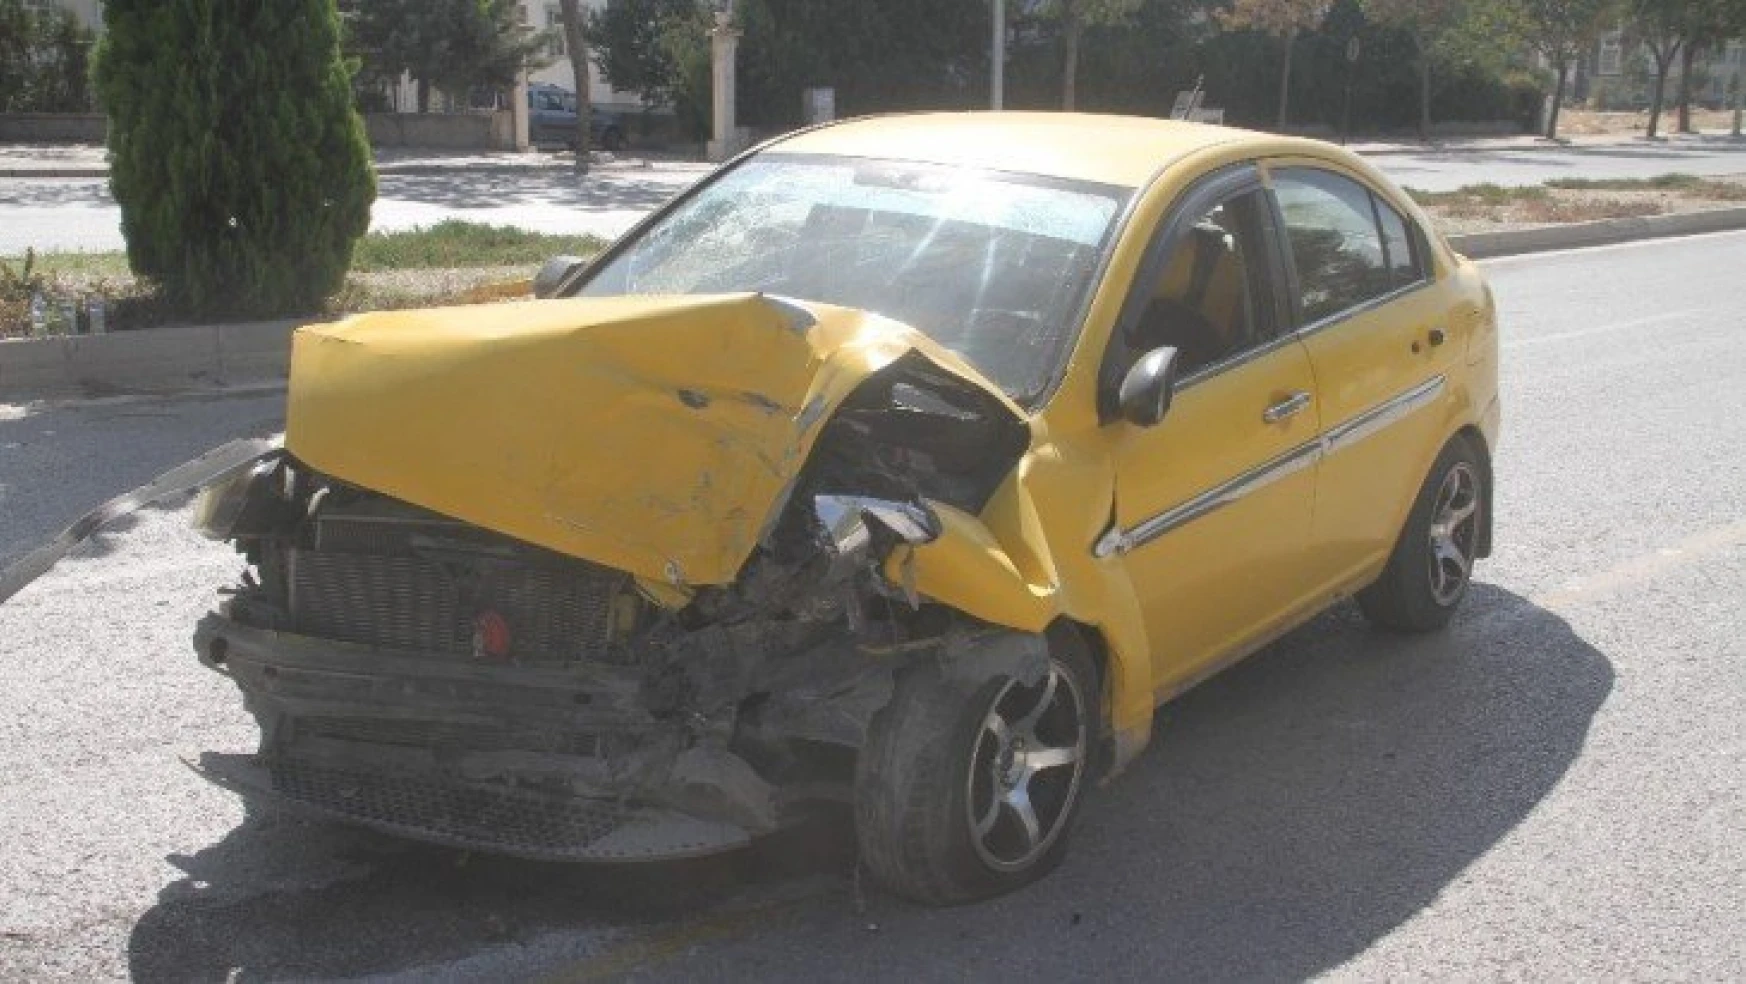 Elazığ'da hafif ticari araç ile otomobil çarpıştı:3 yaralı